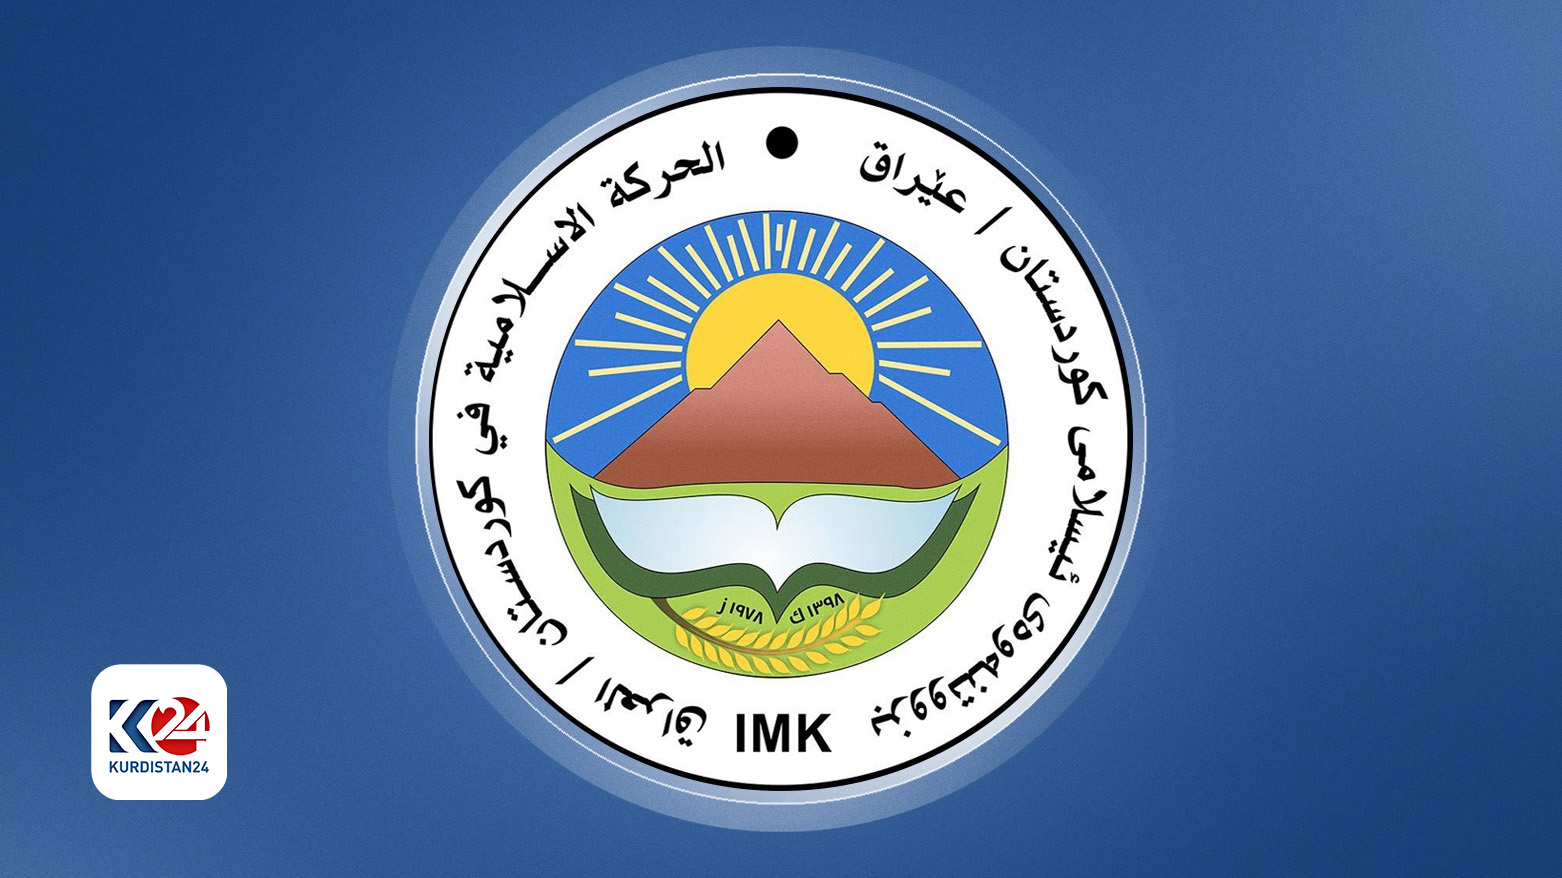 Bizava Îslamî ya Kurdistanê